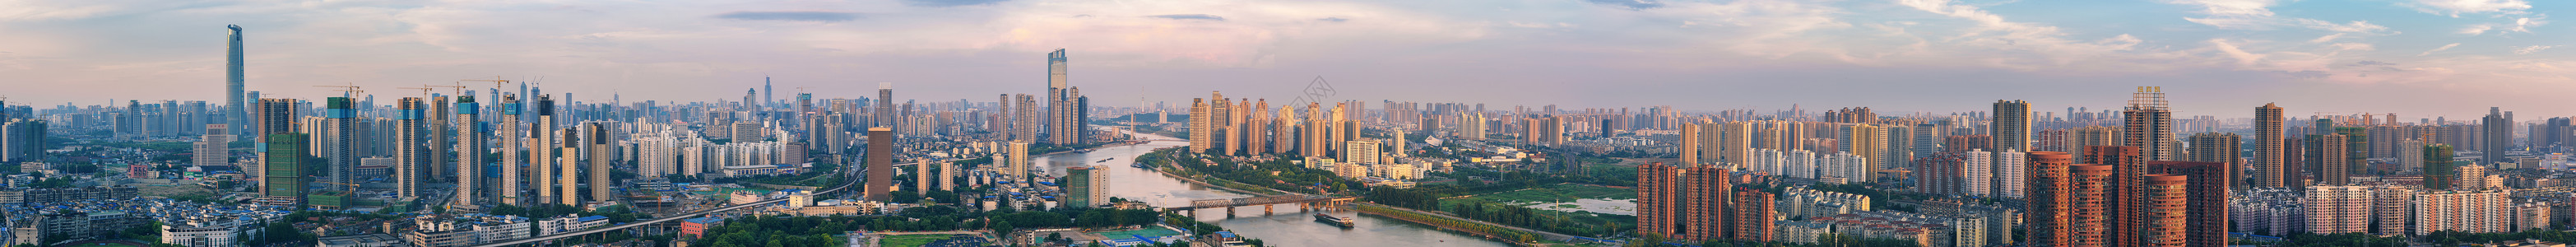 武汉城市风光全景接片图片素材